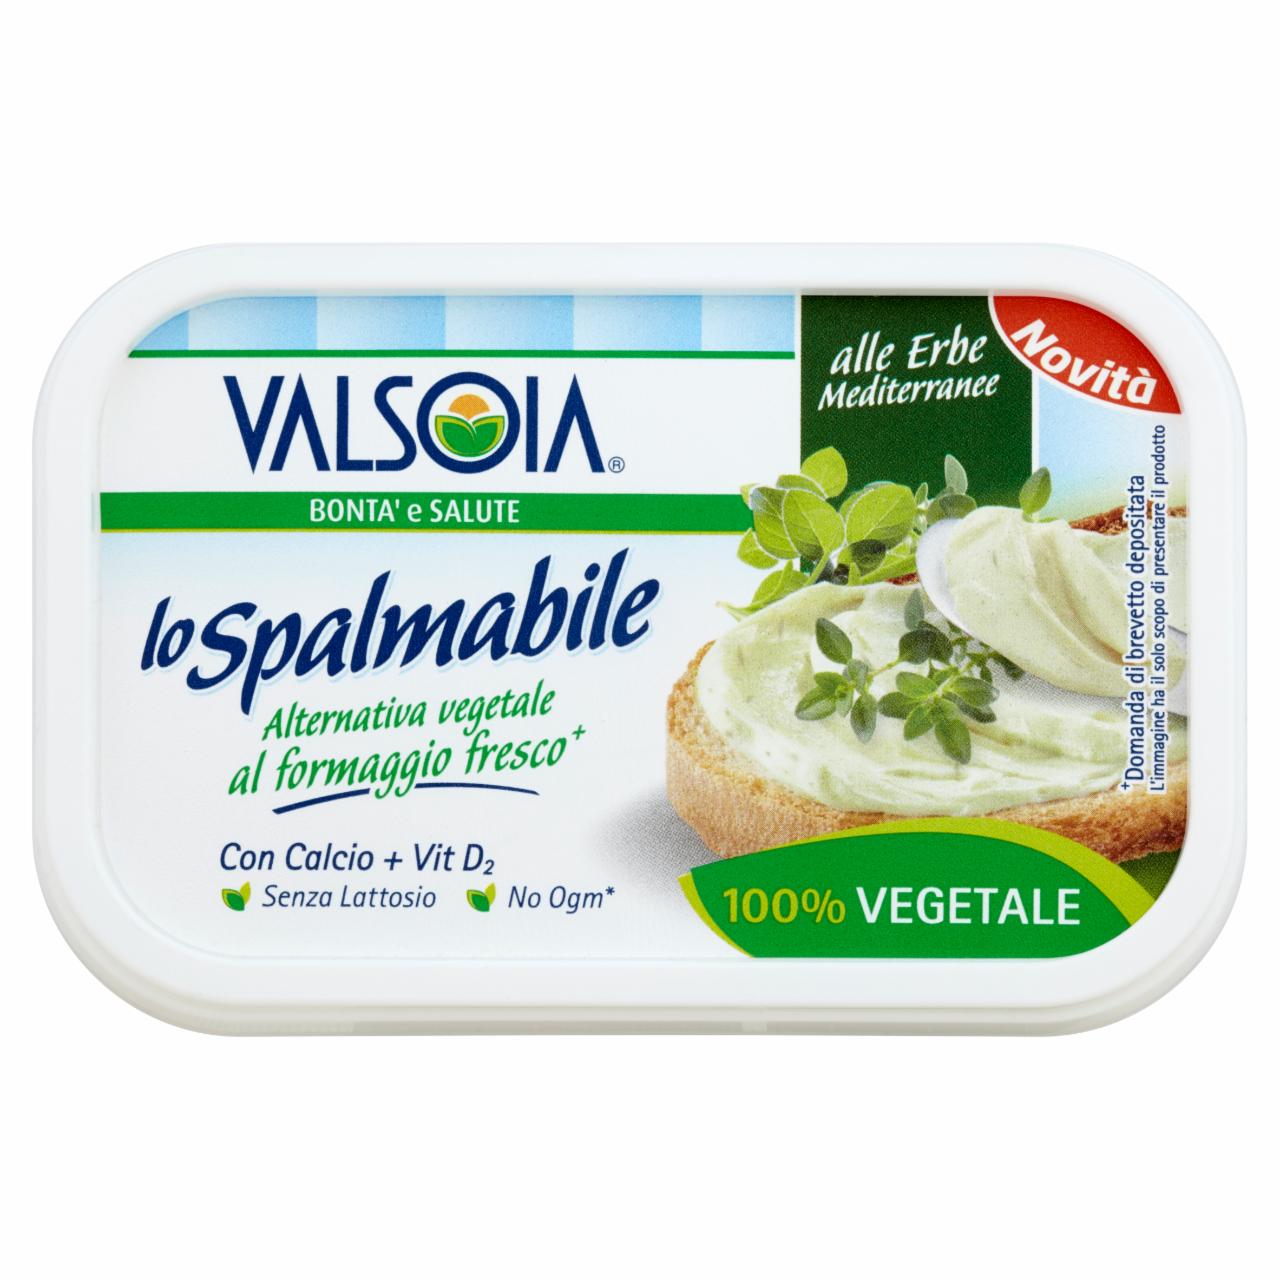 Zdjęcia - Valsoia Lo Spalmabile Kremowa pasta kanapkowa z ziołami 125 g